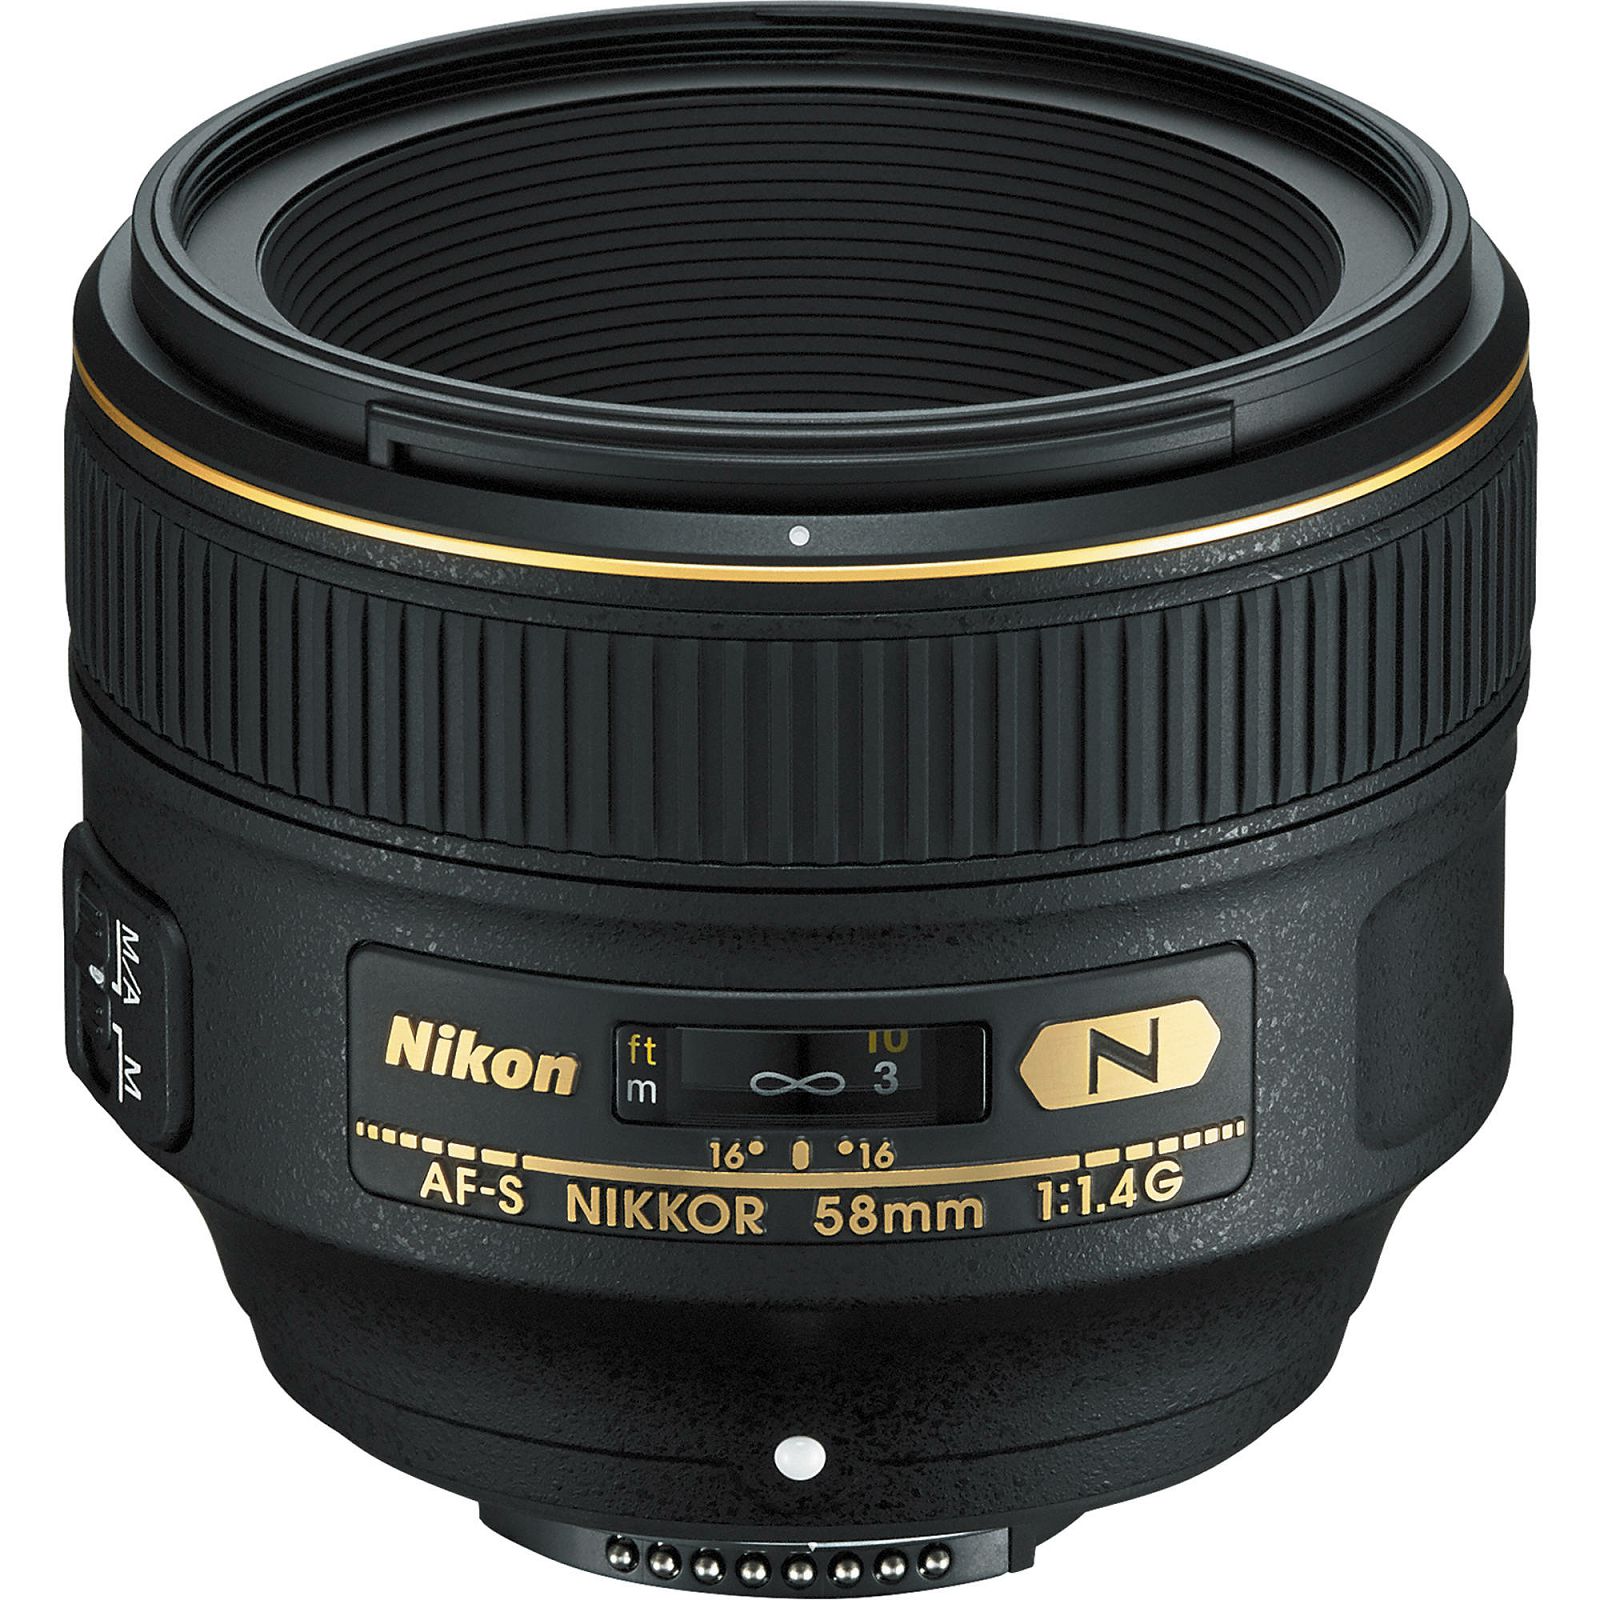 Nikon AF-S 58mm f/1.4G FX standardni objektiv Nikkor 58 f/1.4 G 1.4 F1.4 auto focus prime lens (JAA136DA)